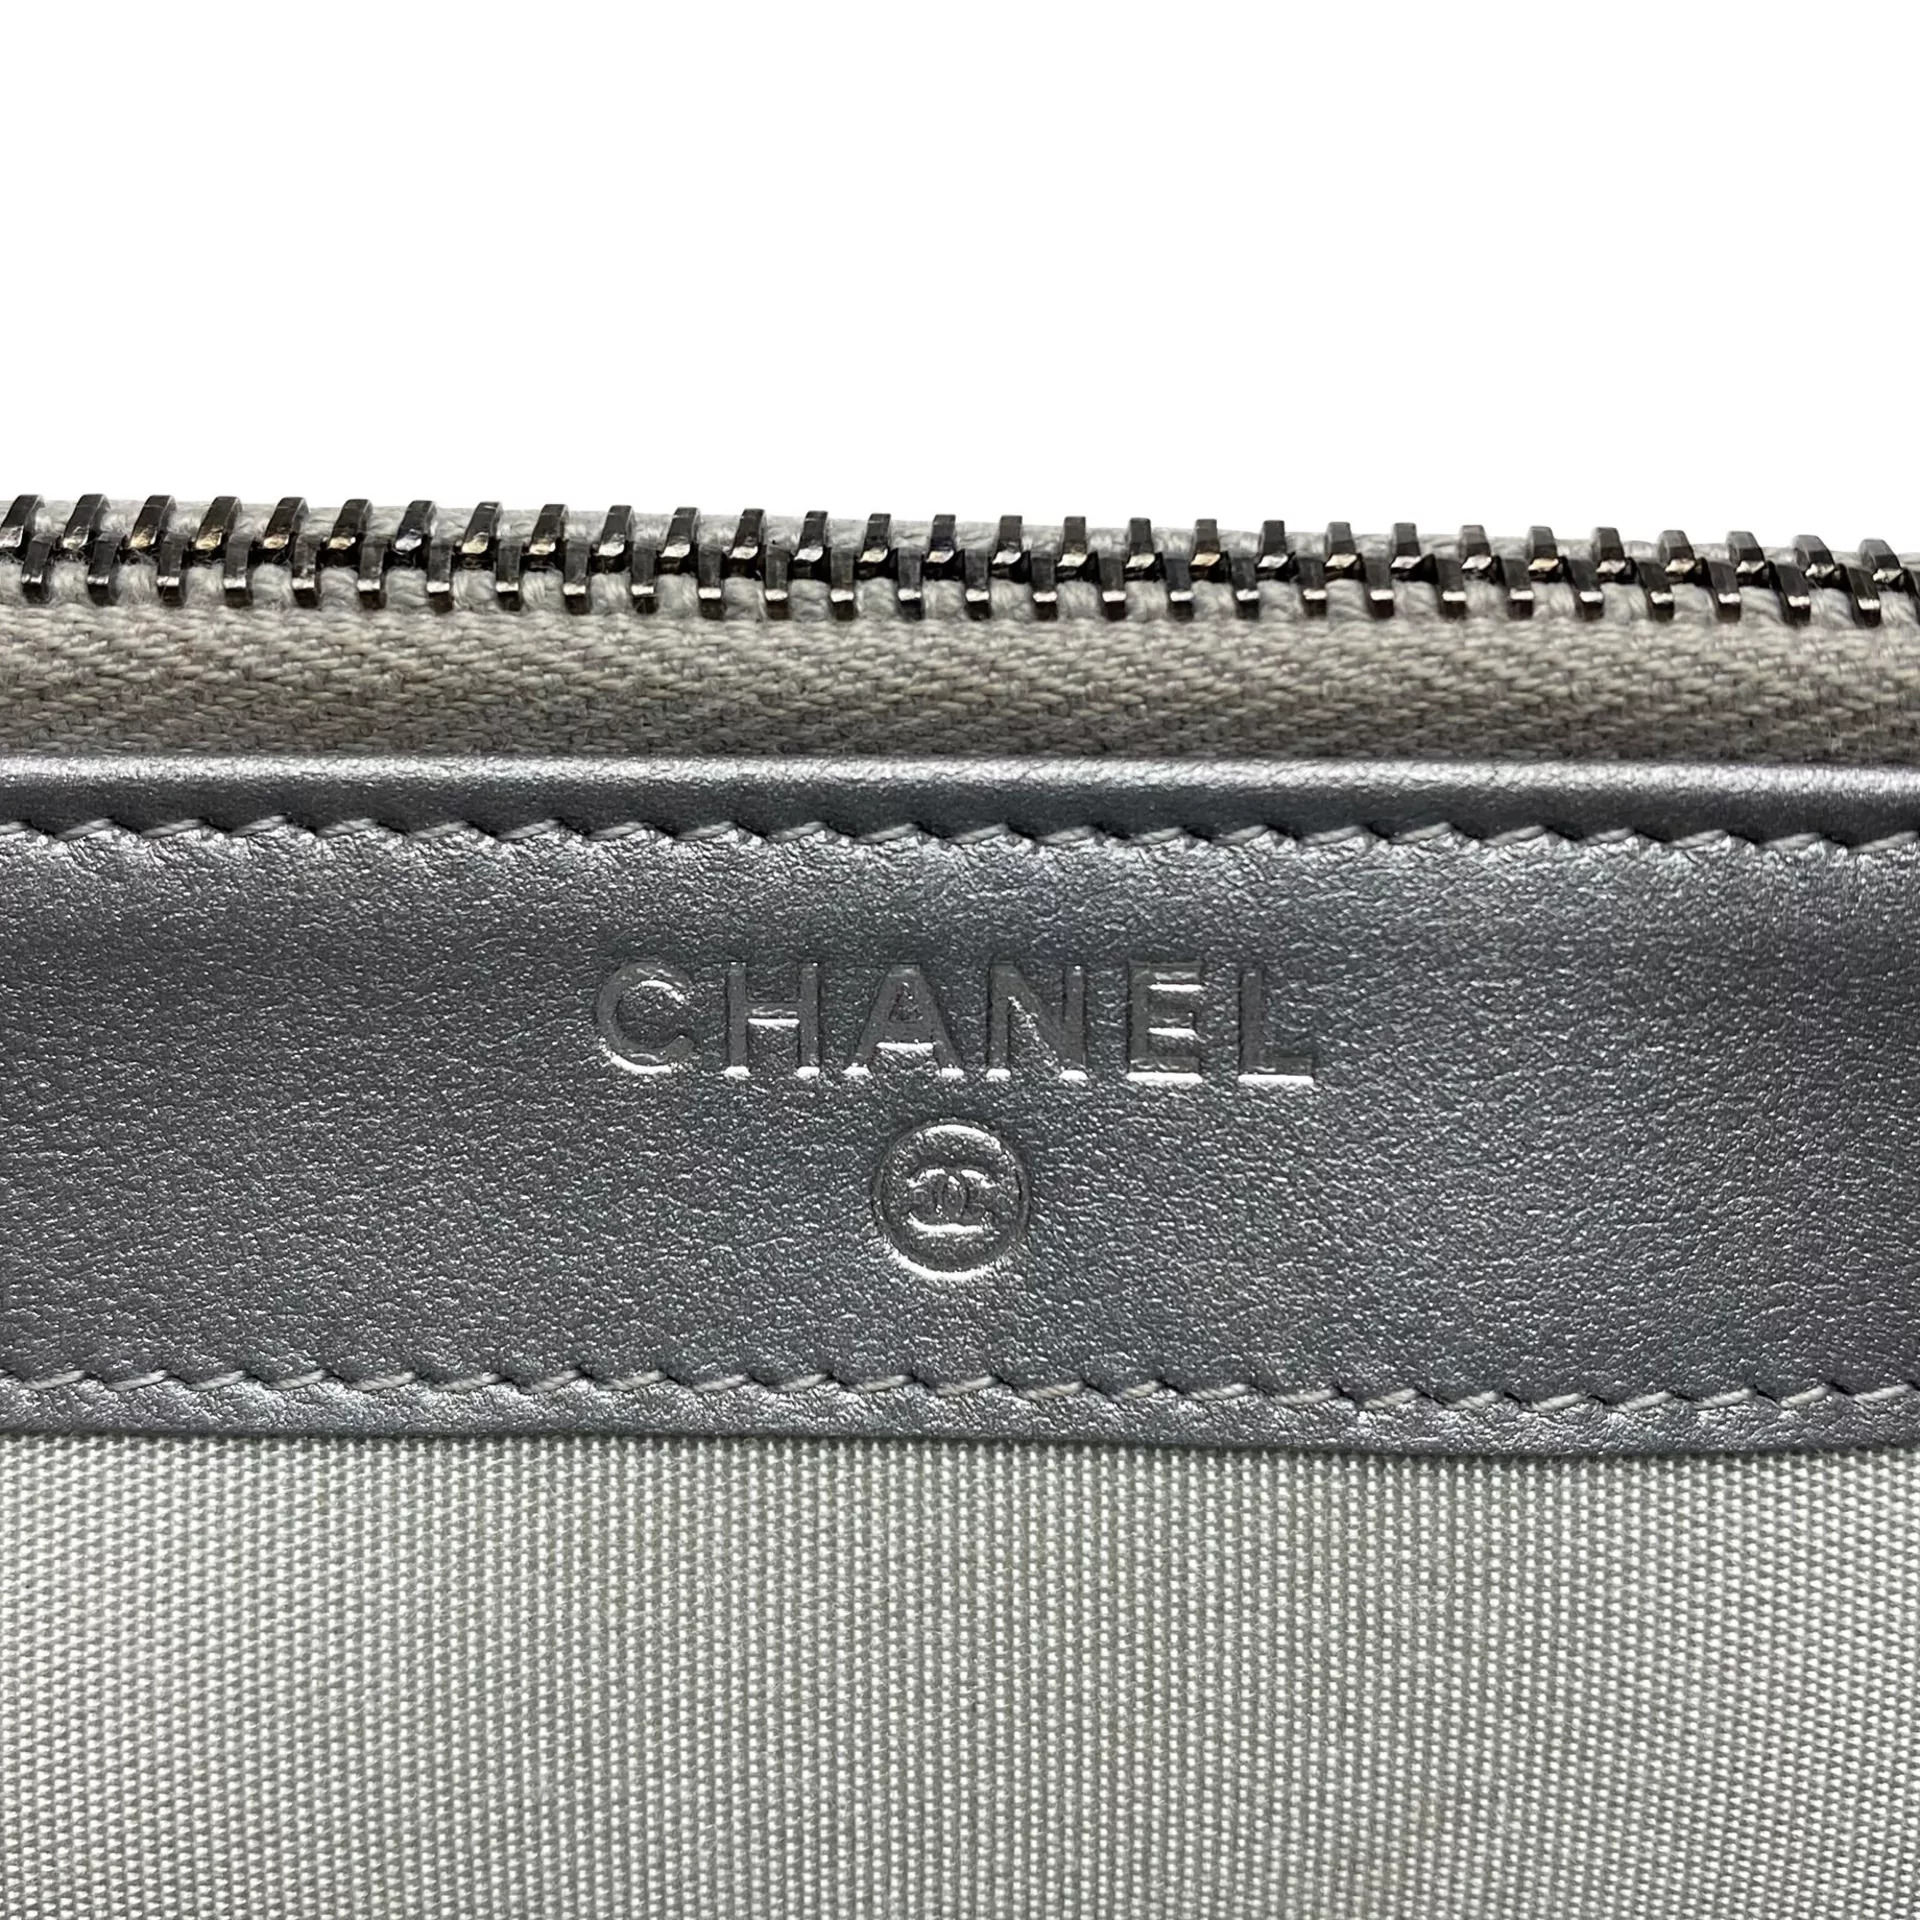 Bolsa Chanel Woc Boy Wallet On Chain